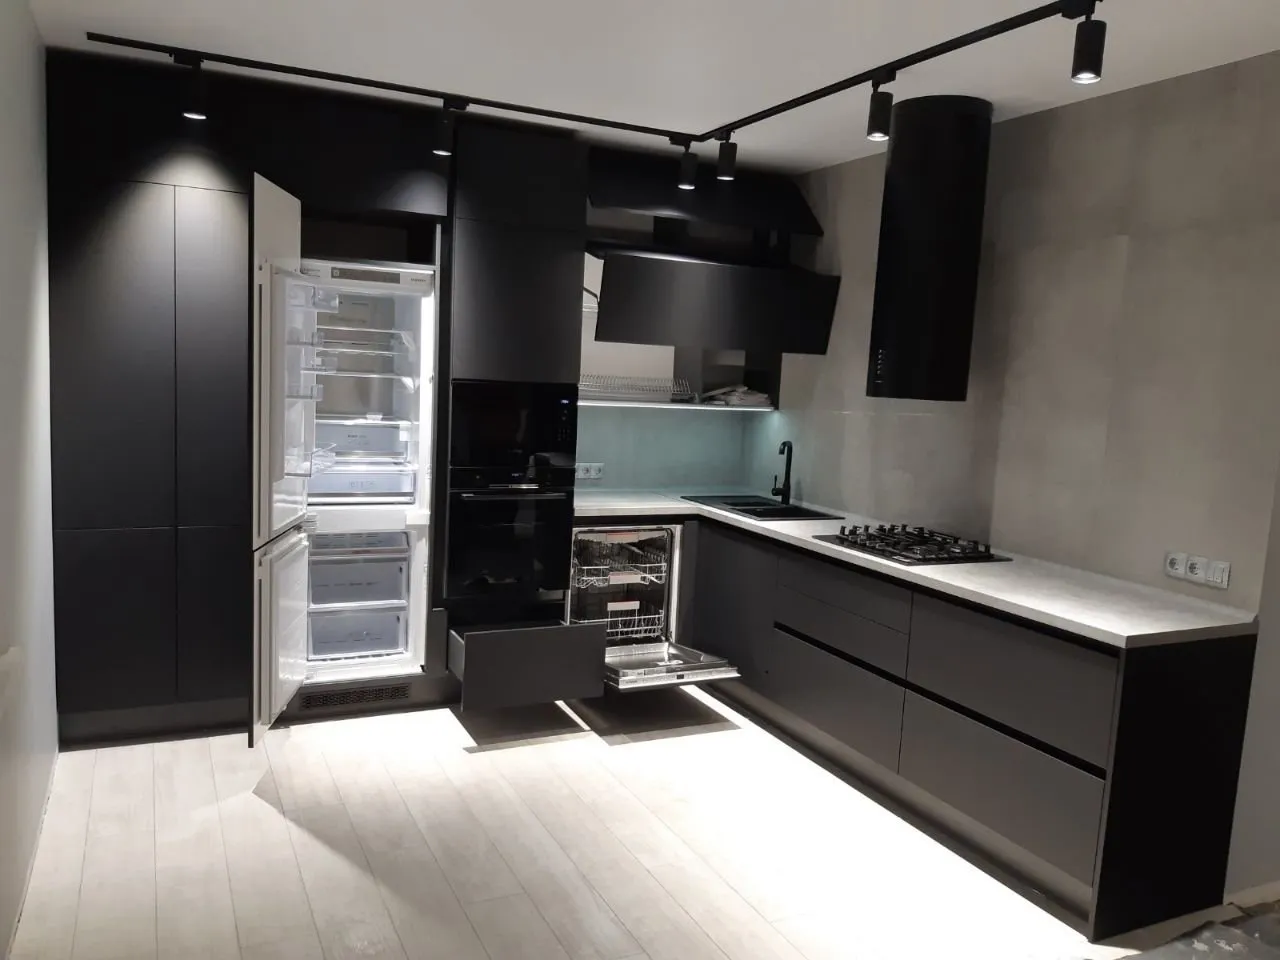 Кухня черный верх. Кухня Феникс НТМ черный. Феникс фасады для кухни. Fenix кухни черный холодильник. Кухня с черными фасадами.